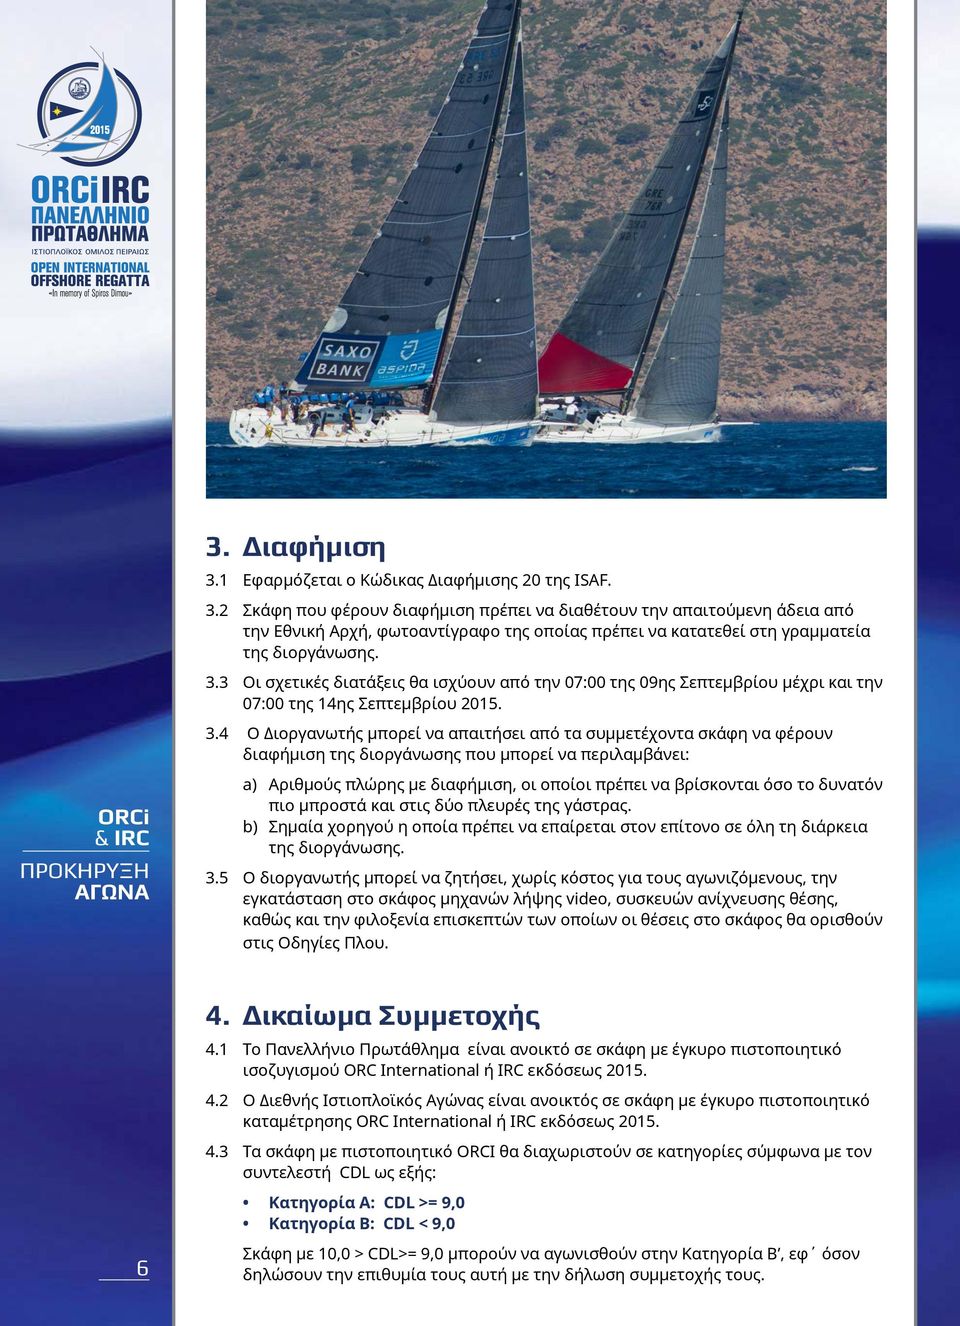 4 Ο Διοργανωτής μπορεί να απαιτήσει από τα συμμετέχοντα σκάφη να φέρουν διαφήμιση της διοργάνωσης που μπορεί να περιλαμβάνει: ORCi a) Αριθμούς πλώρης με διαφήμιση, οι οποίοι πρέπει να βρίσκονται όσο